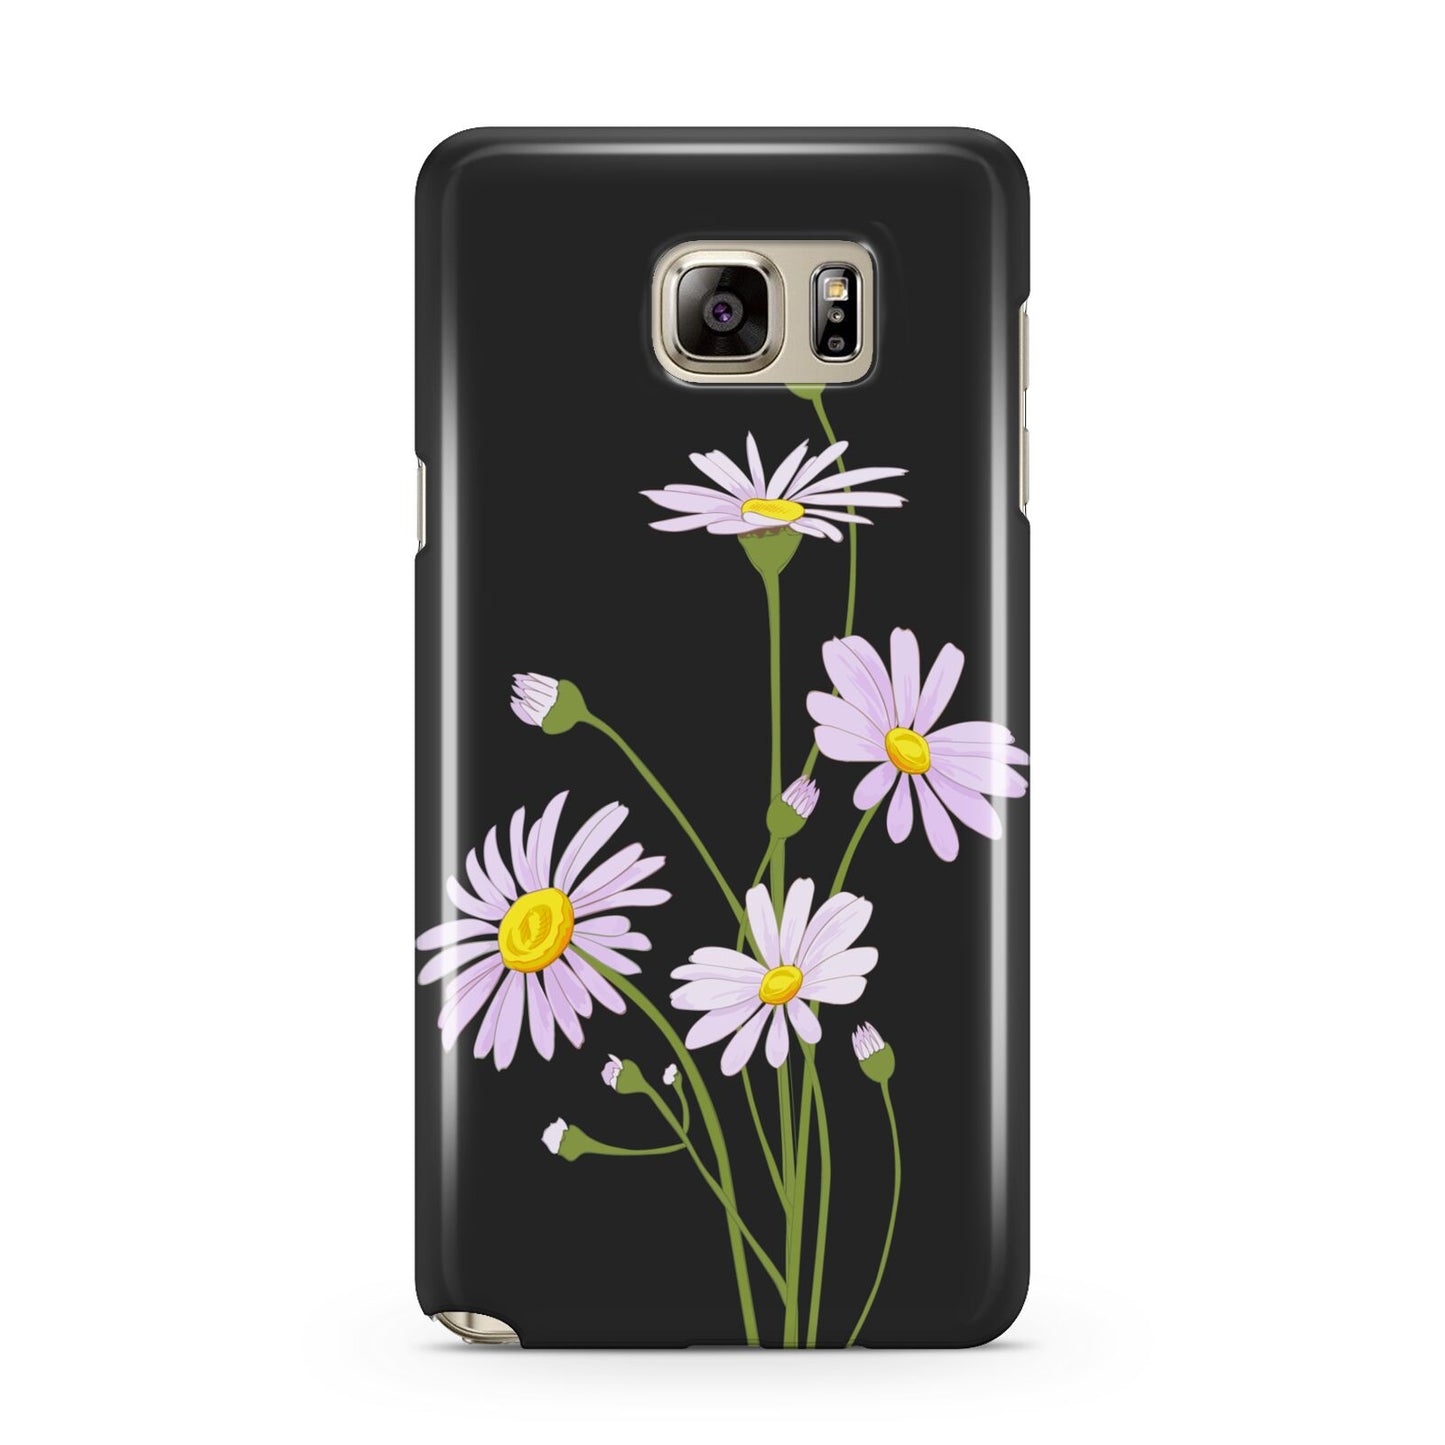 Wild Daisies Samsung Galaxy Note 5 Case